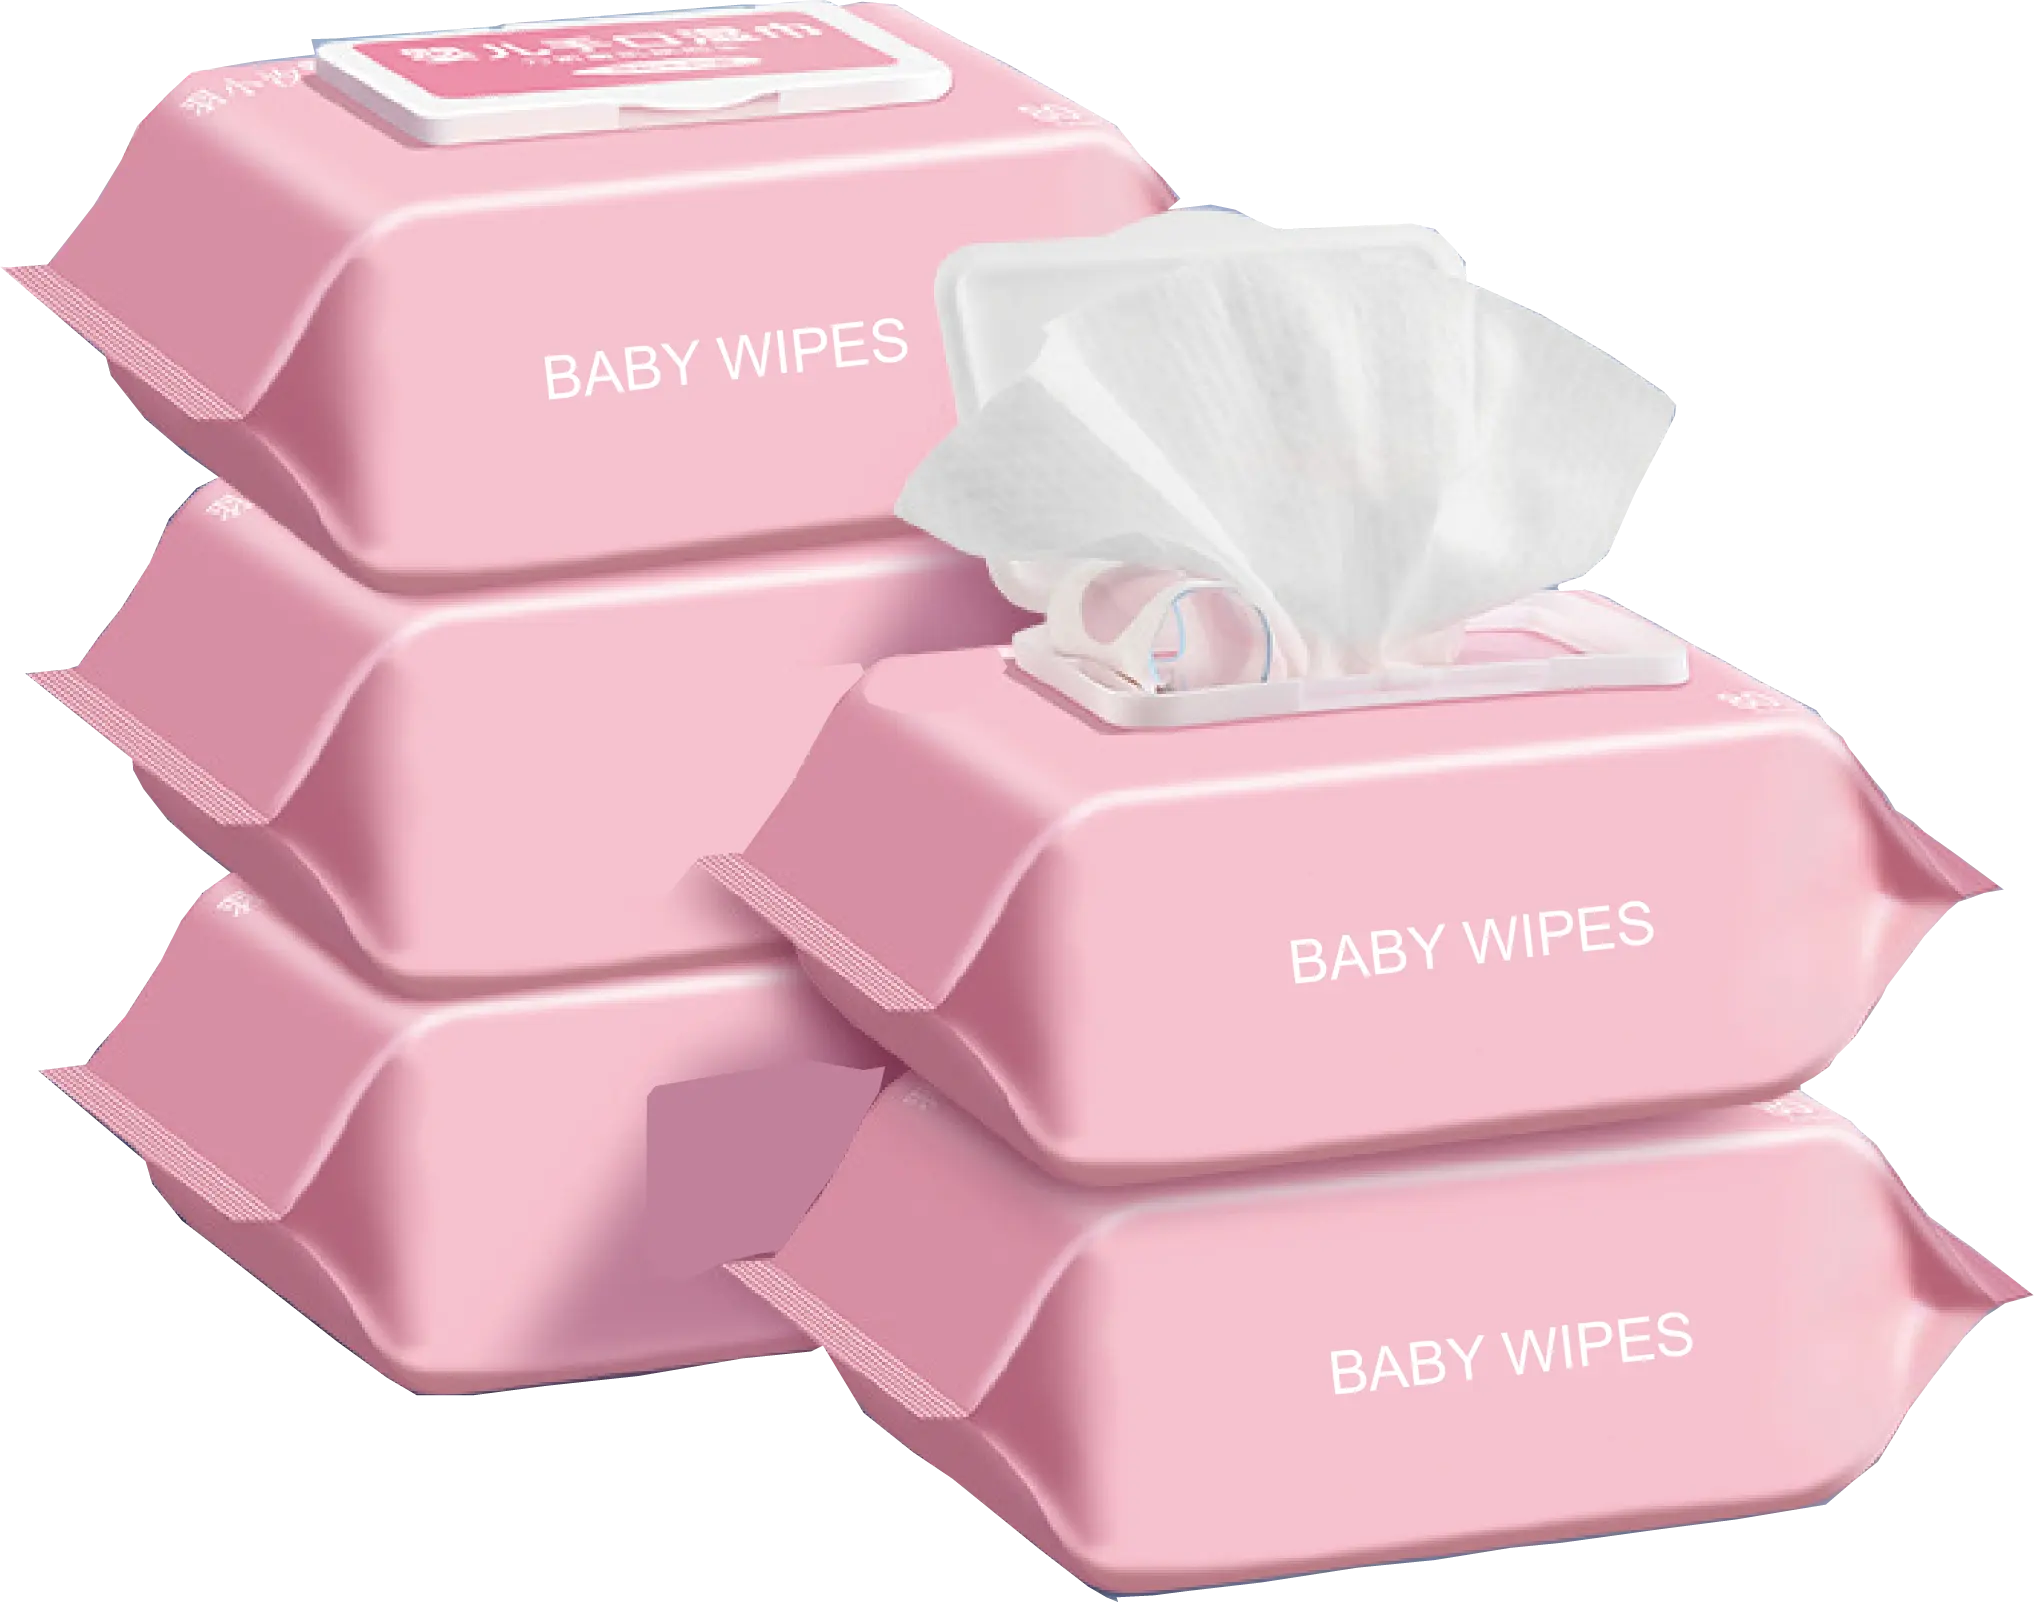 Lingettes d'eau pour bébés, serviettes délicates pour le confort de l'enfant